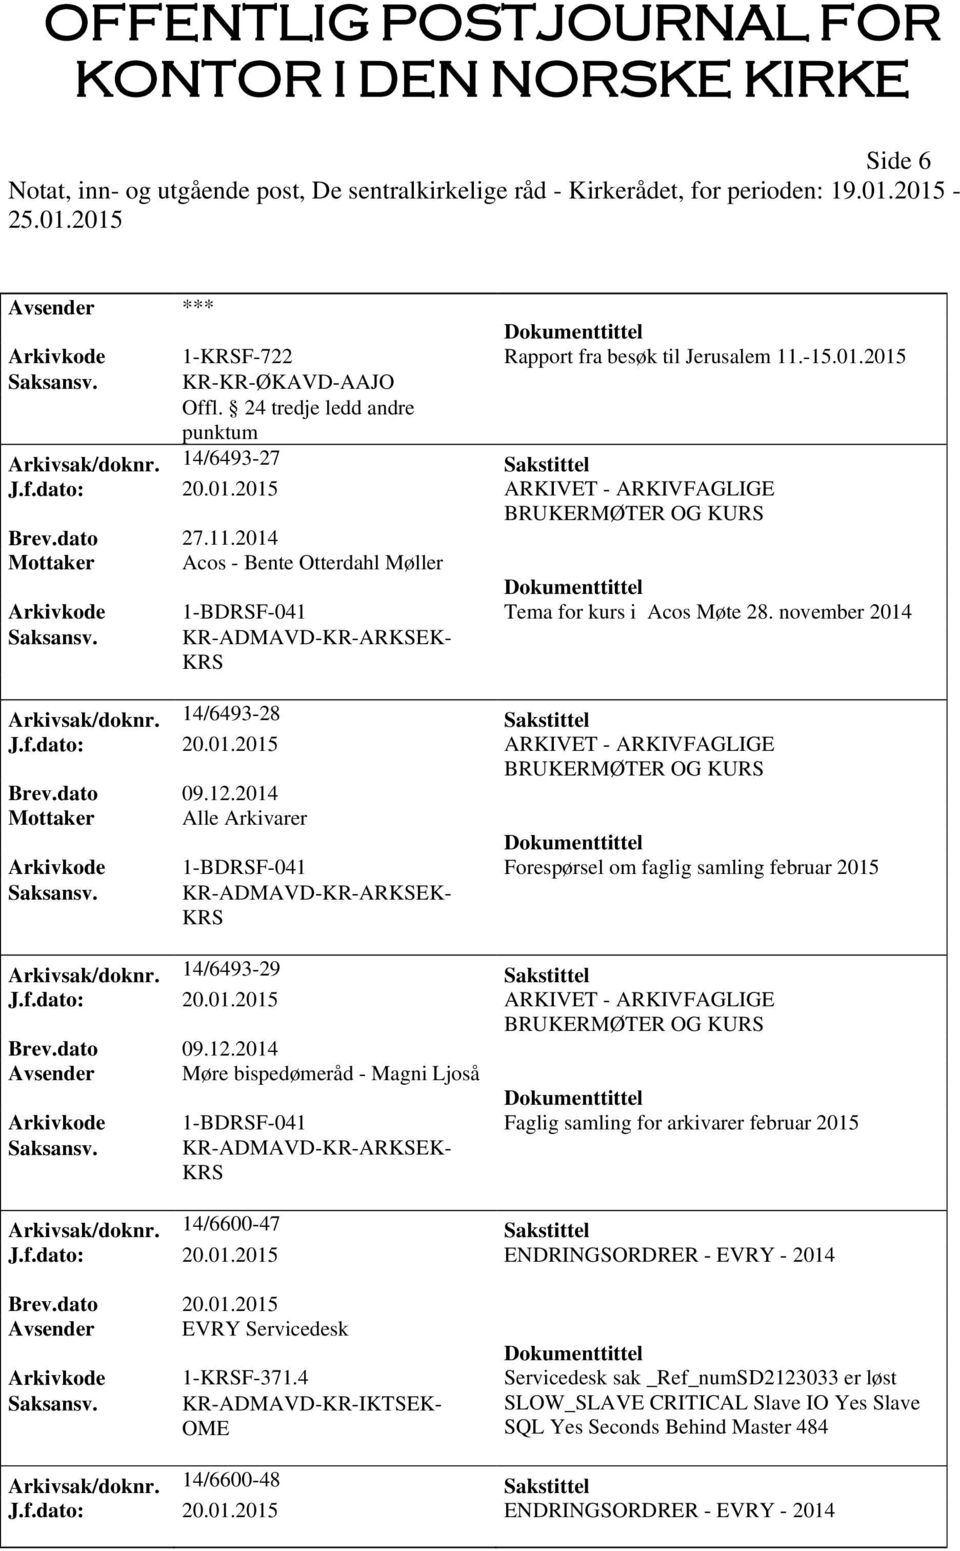 KR-ADMAVD-KR-ARKSEK- KRS Arkivsak/doknr. 14/6493-28 Sakstittel J.f.dato: 20.01.2015 ARKIVET - ARKIVFAGLIGE BRUKERMØTER OG KURS Brev.dato 09.12.